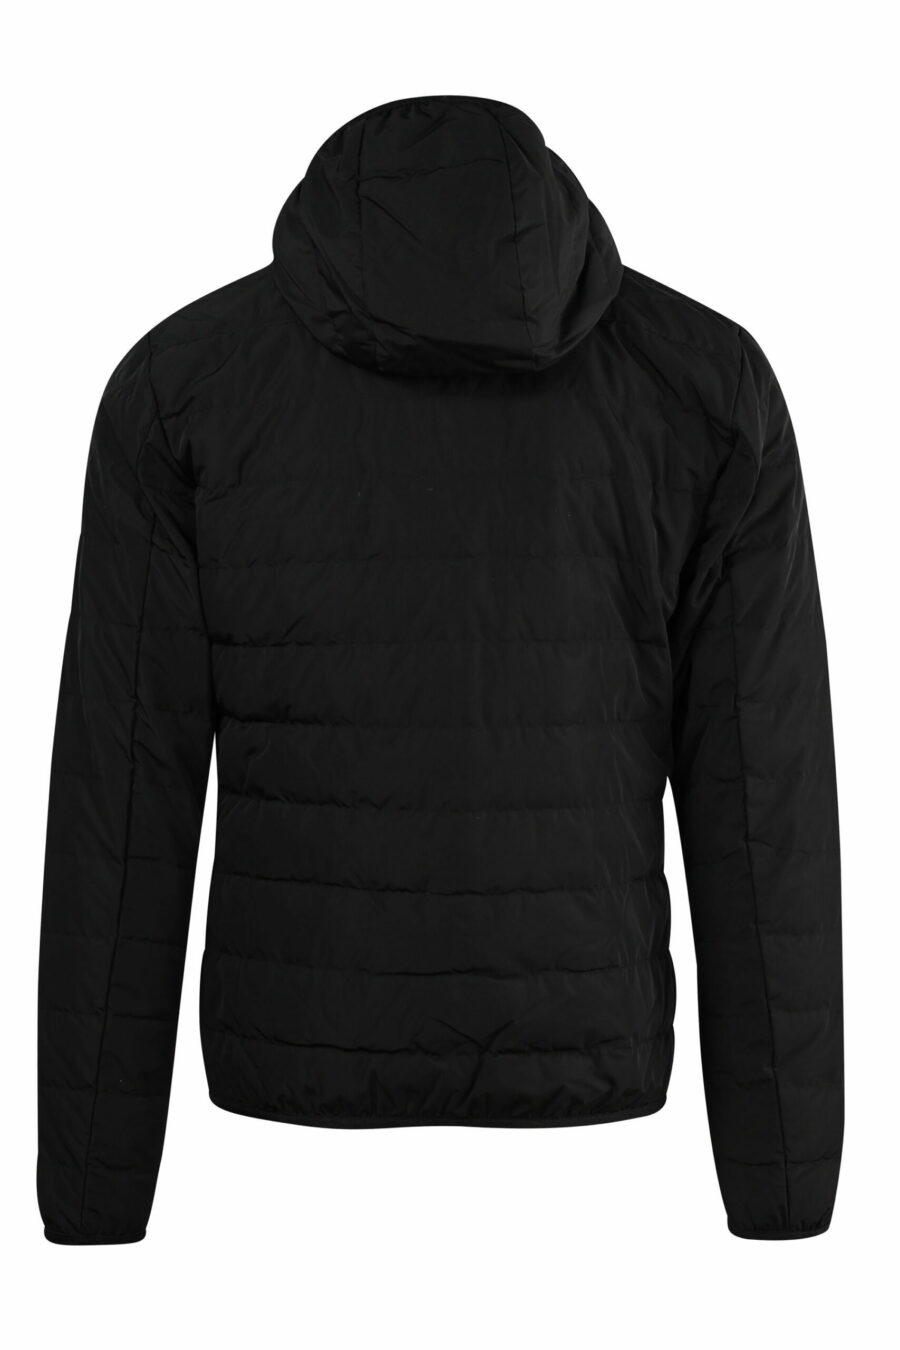 Veste coupe-vent noire avec capuche et logo vertical "lux identity" - 8057767519568 1 scaled